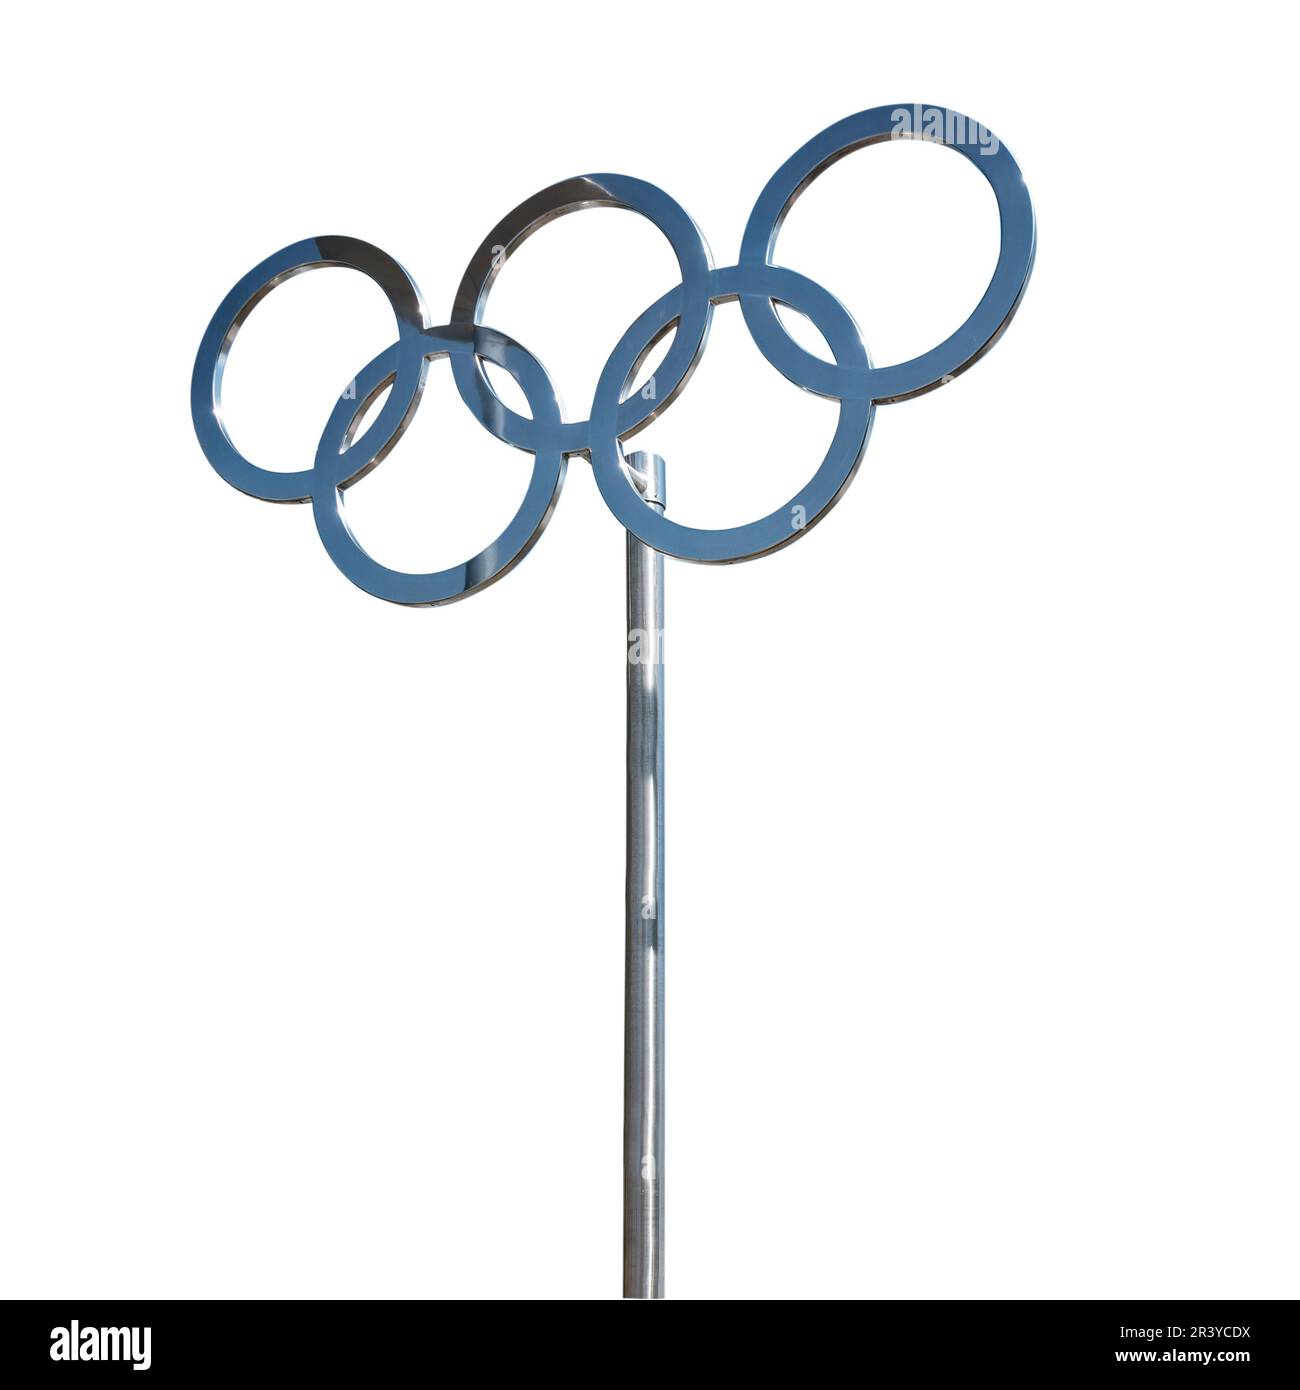 Foto degli anelli olimpici metallici su un palo, segno dei giochi olimpici isolato su sfondo bianco, Parigi 2024 Foto Stock